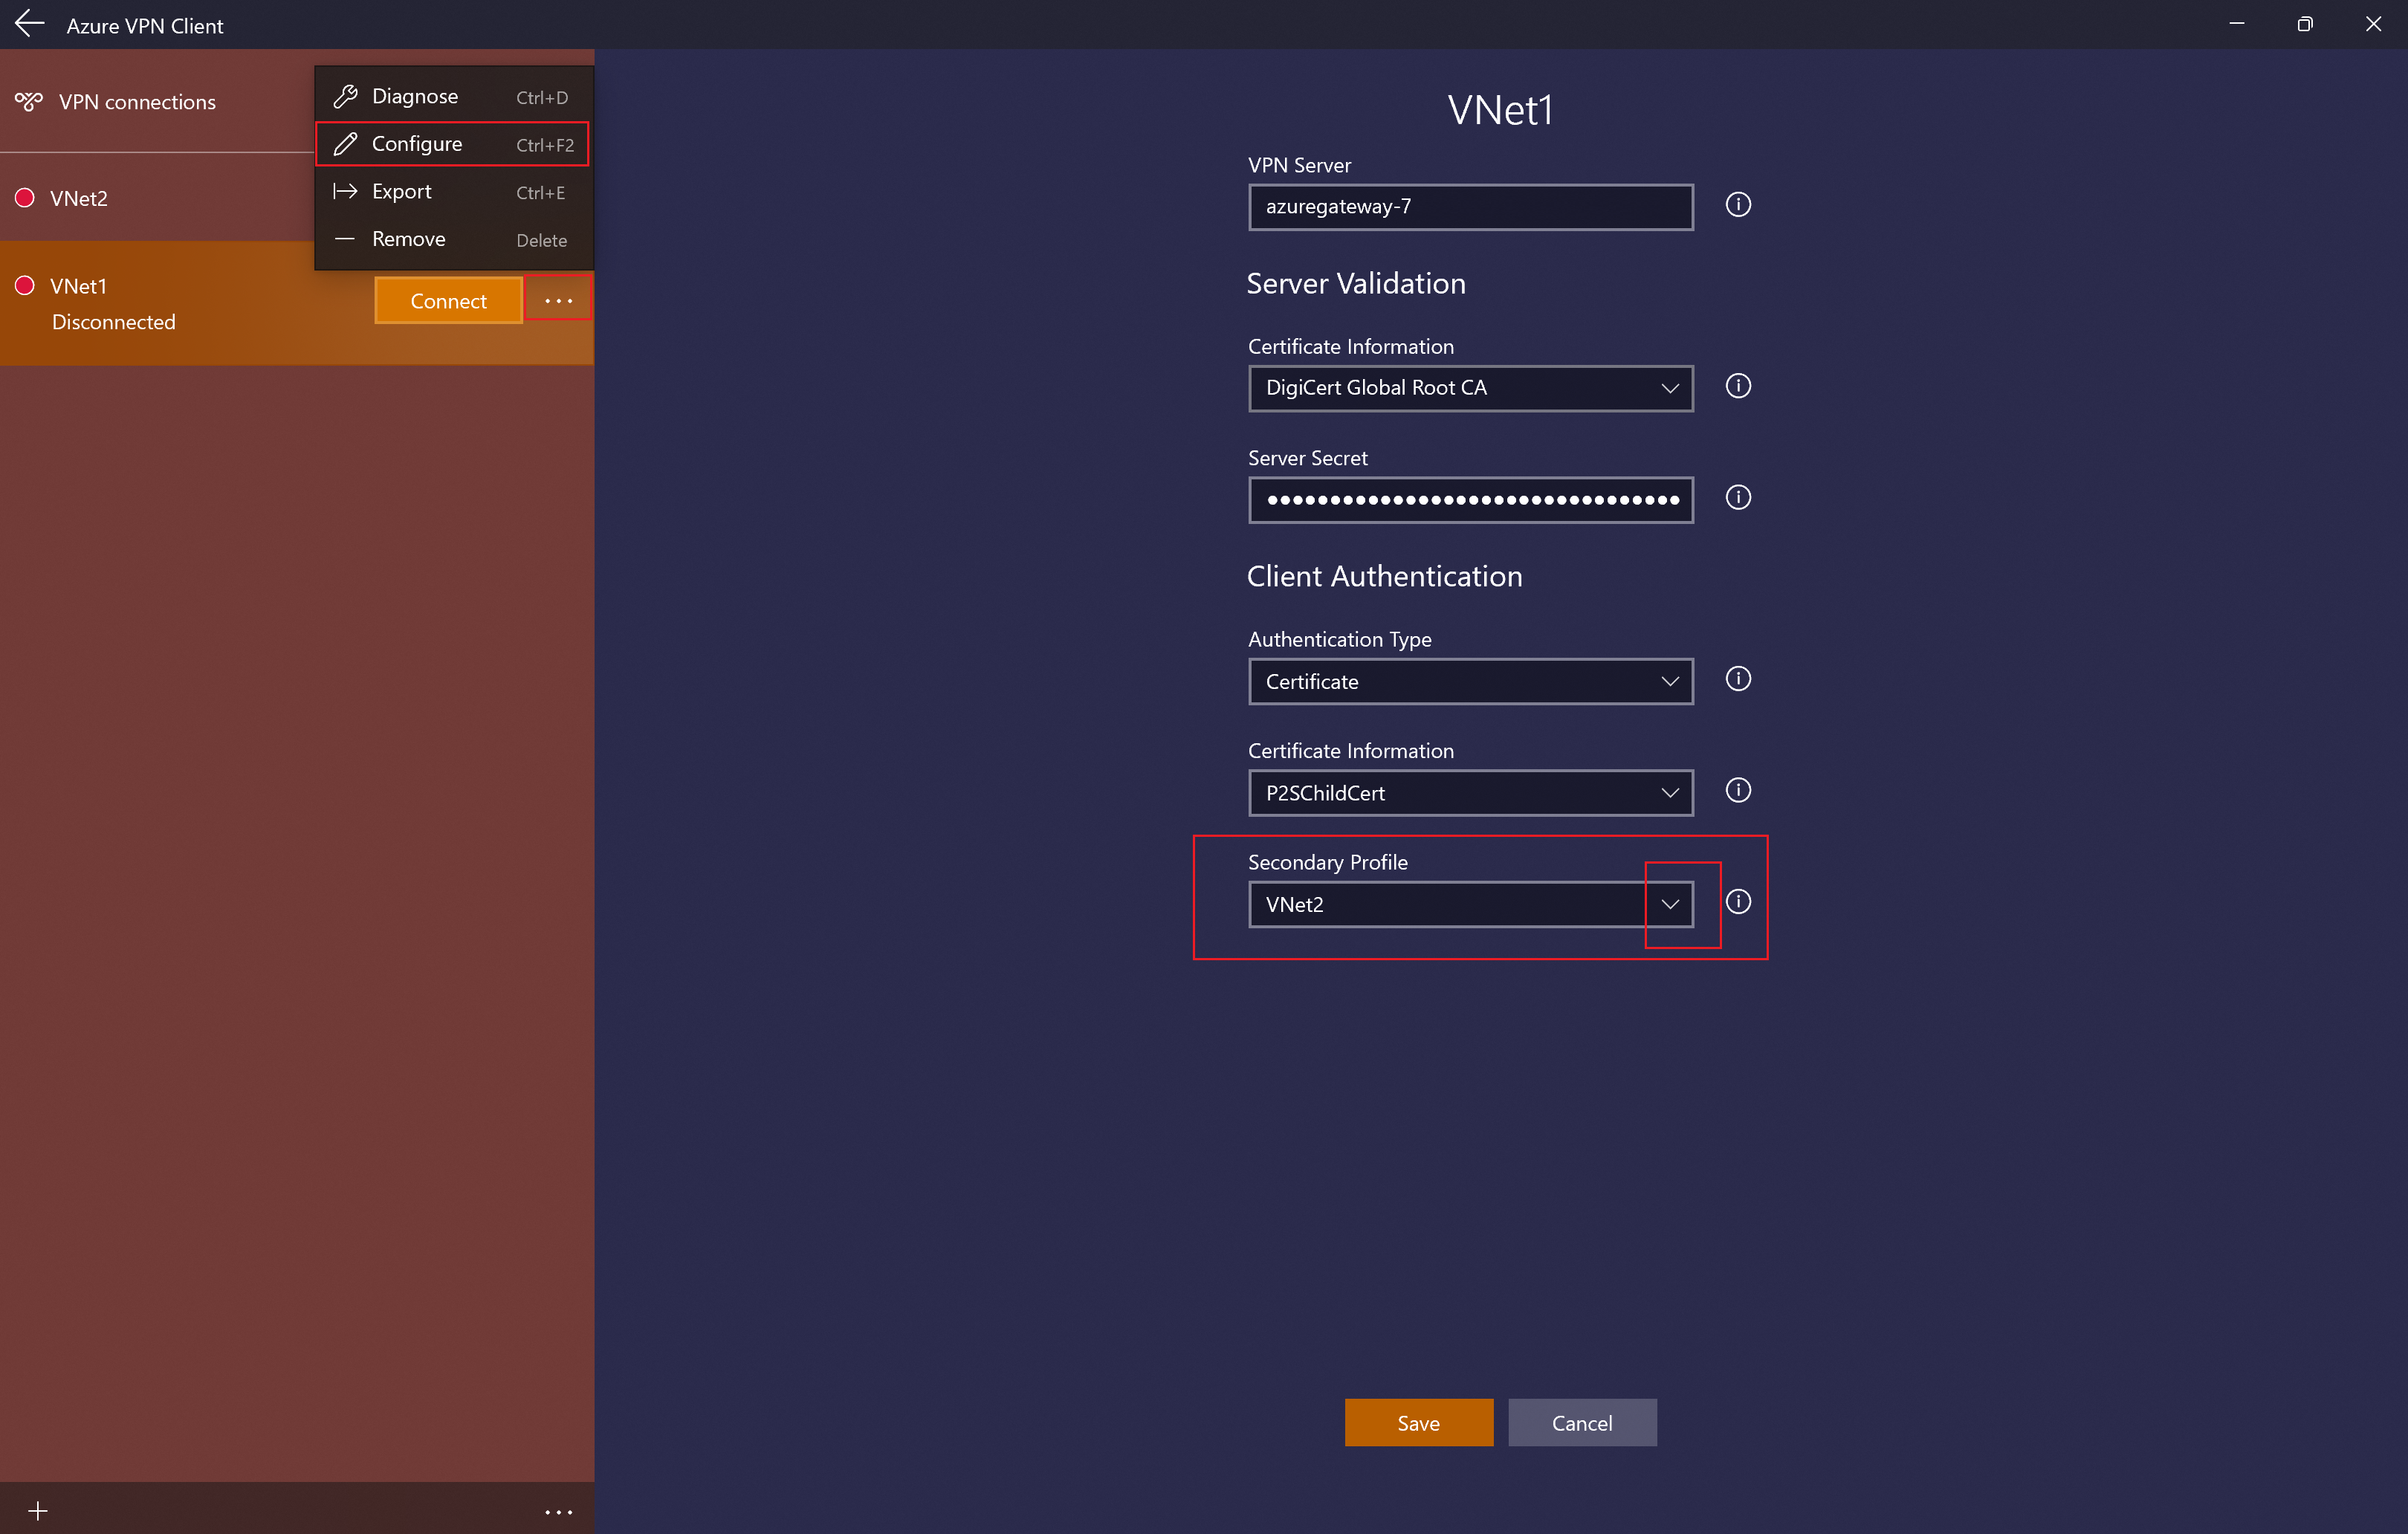 Captura de pantalla que muestra la página de configuración del perfil de cliente VPN de Azure con un perfil secundario.